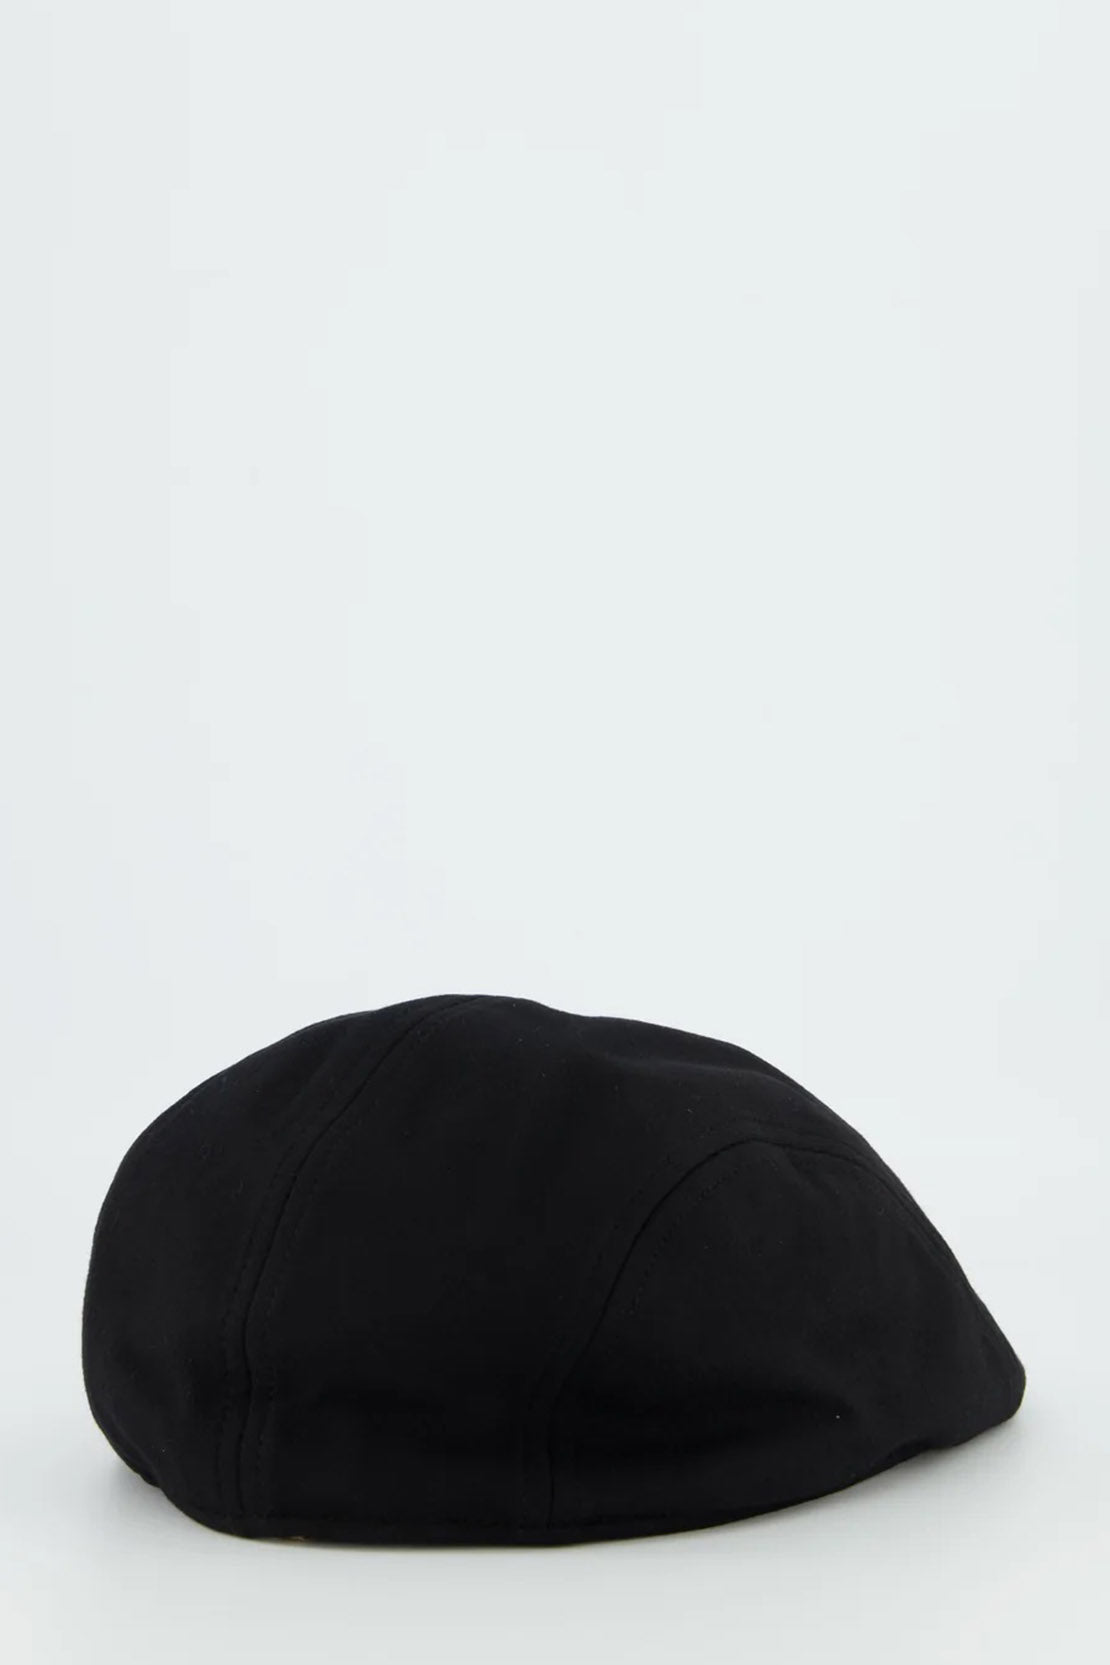 BOSS - TRAY Flat-cap in Black 50505576 001